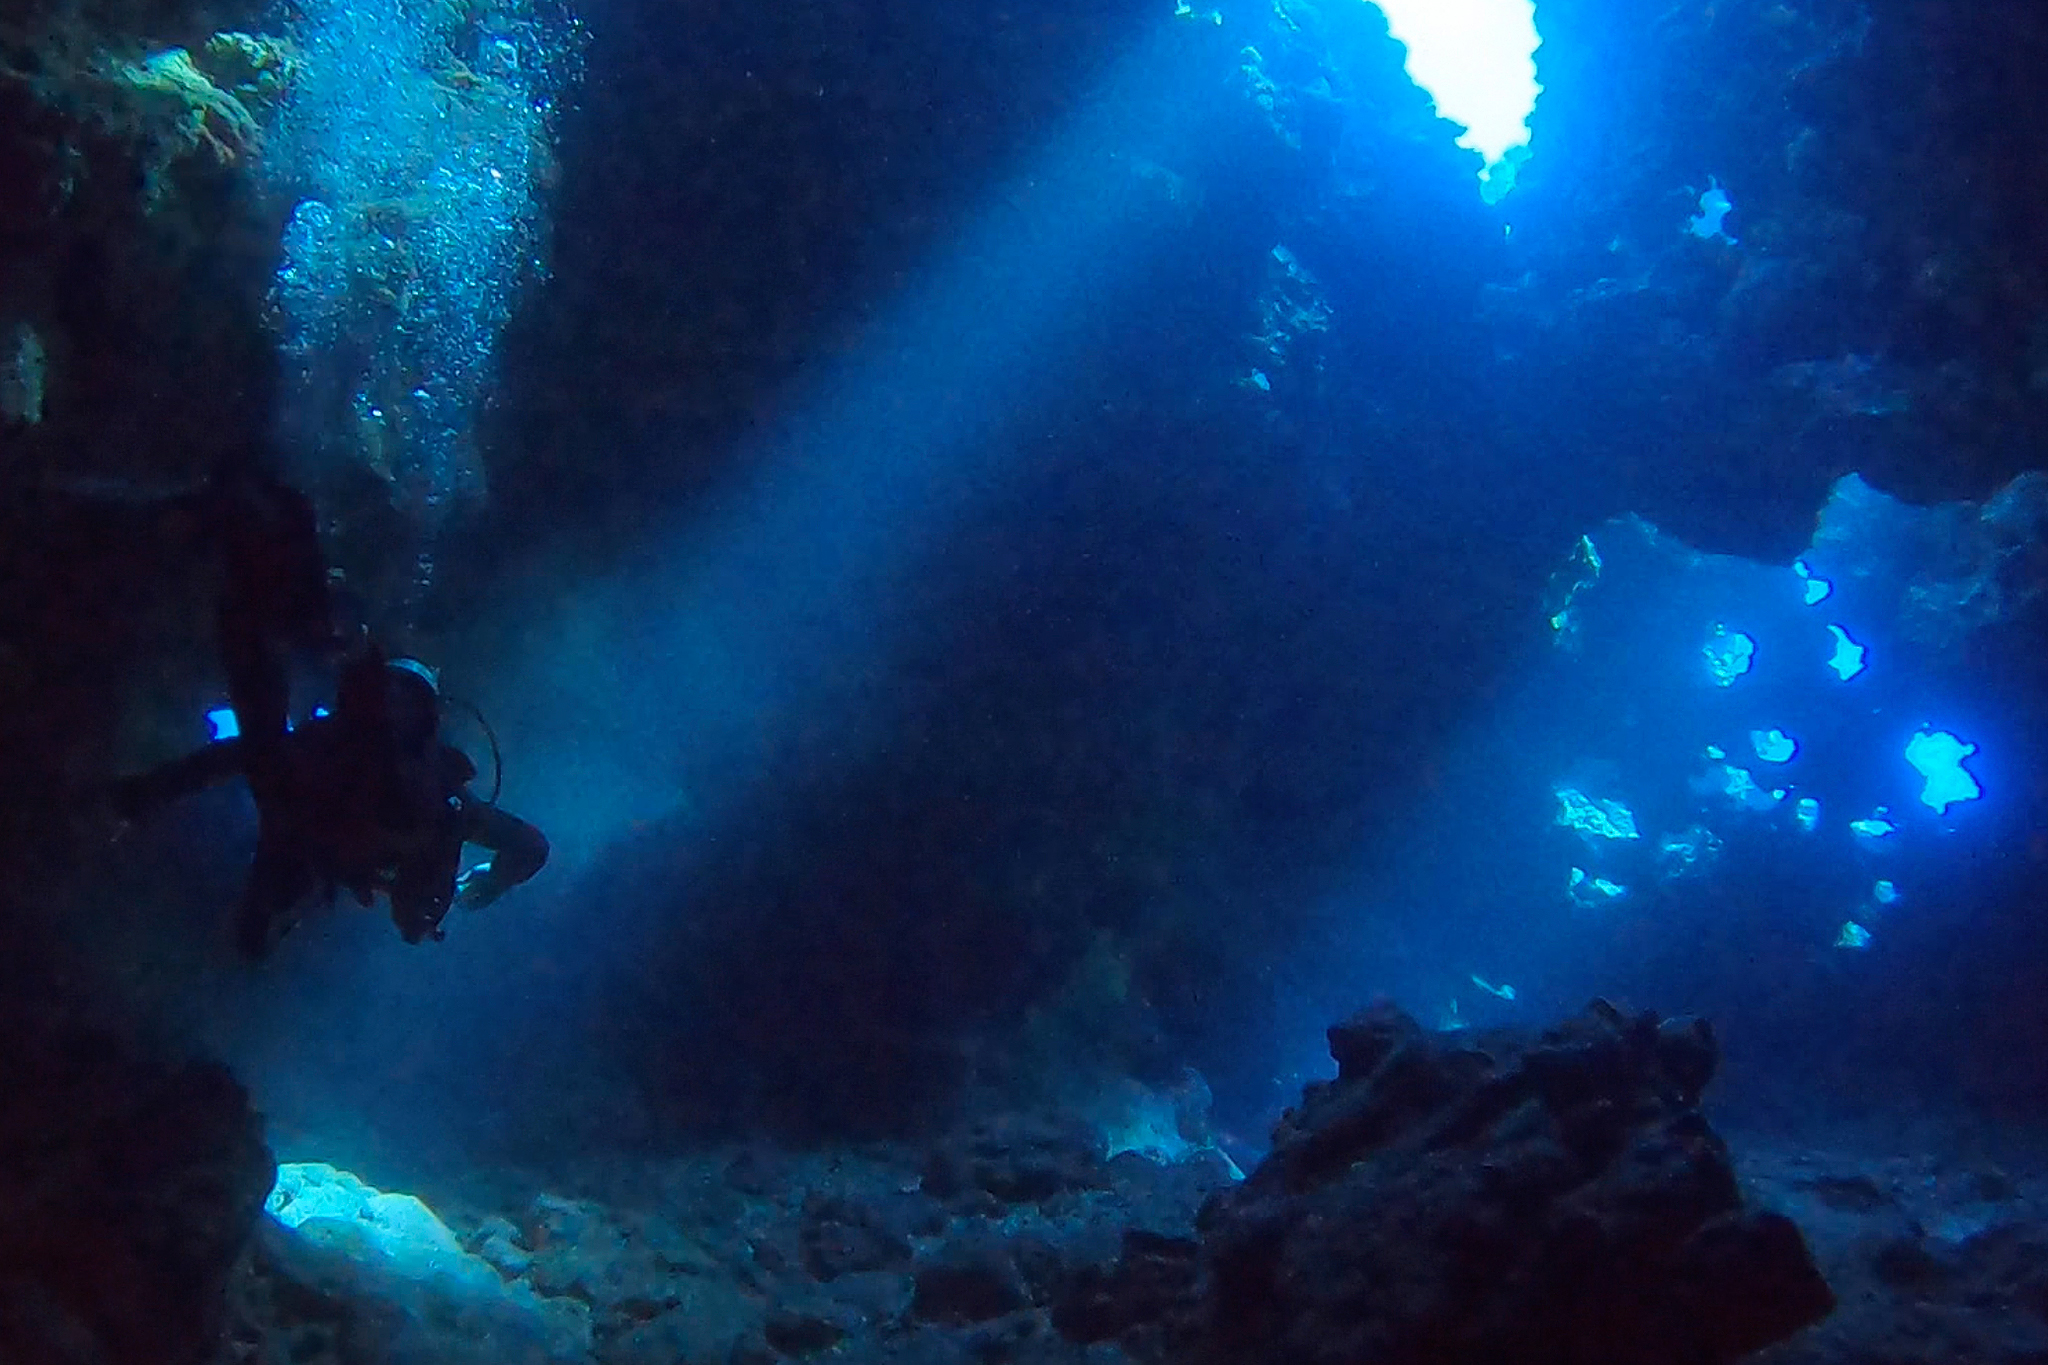 The rare underwater phenomenon found in Hawaii’s waters